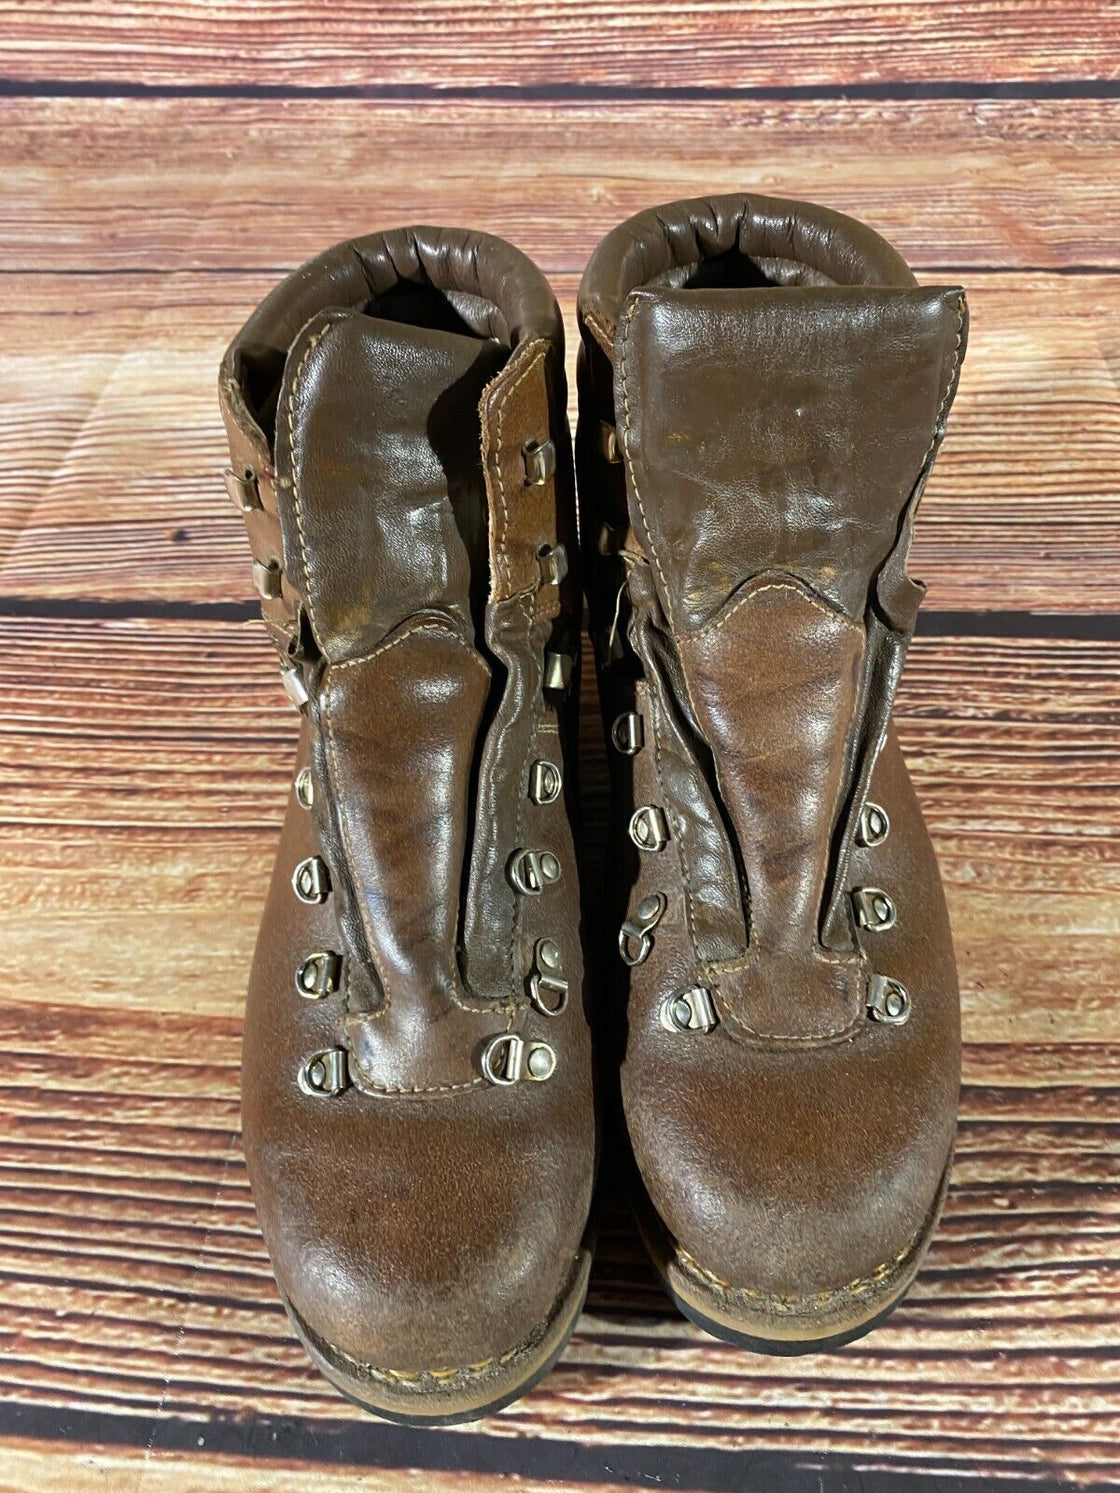 Hiking Boots Trekking Trails Leather Shoes Unisex Size EU44, US10, UK9